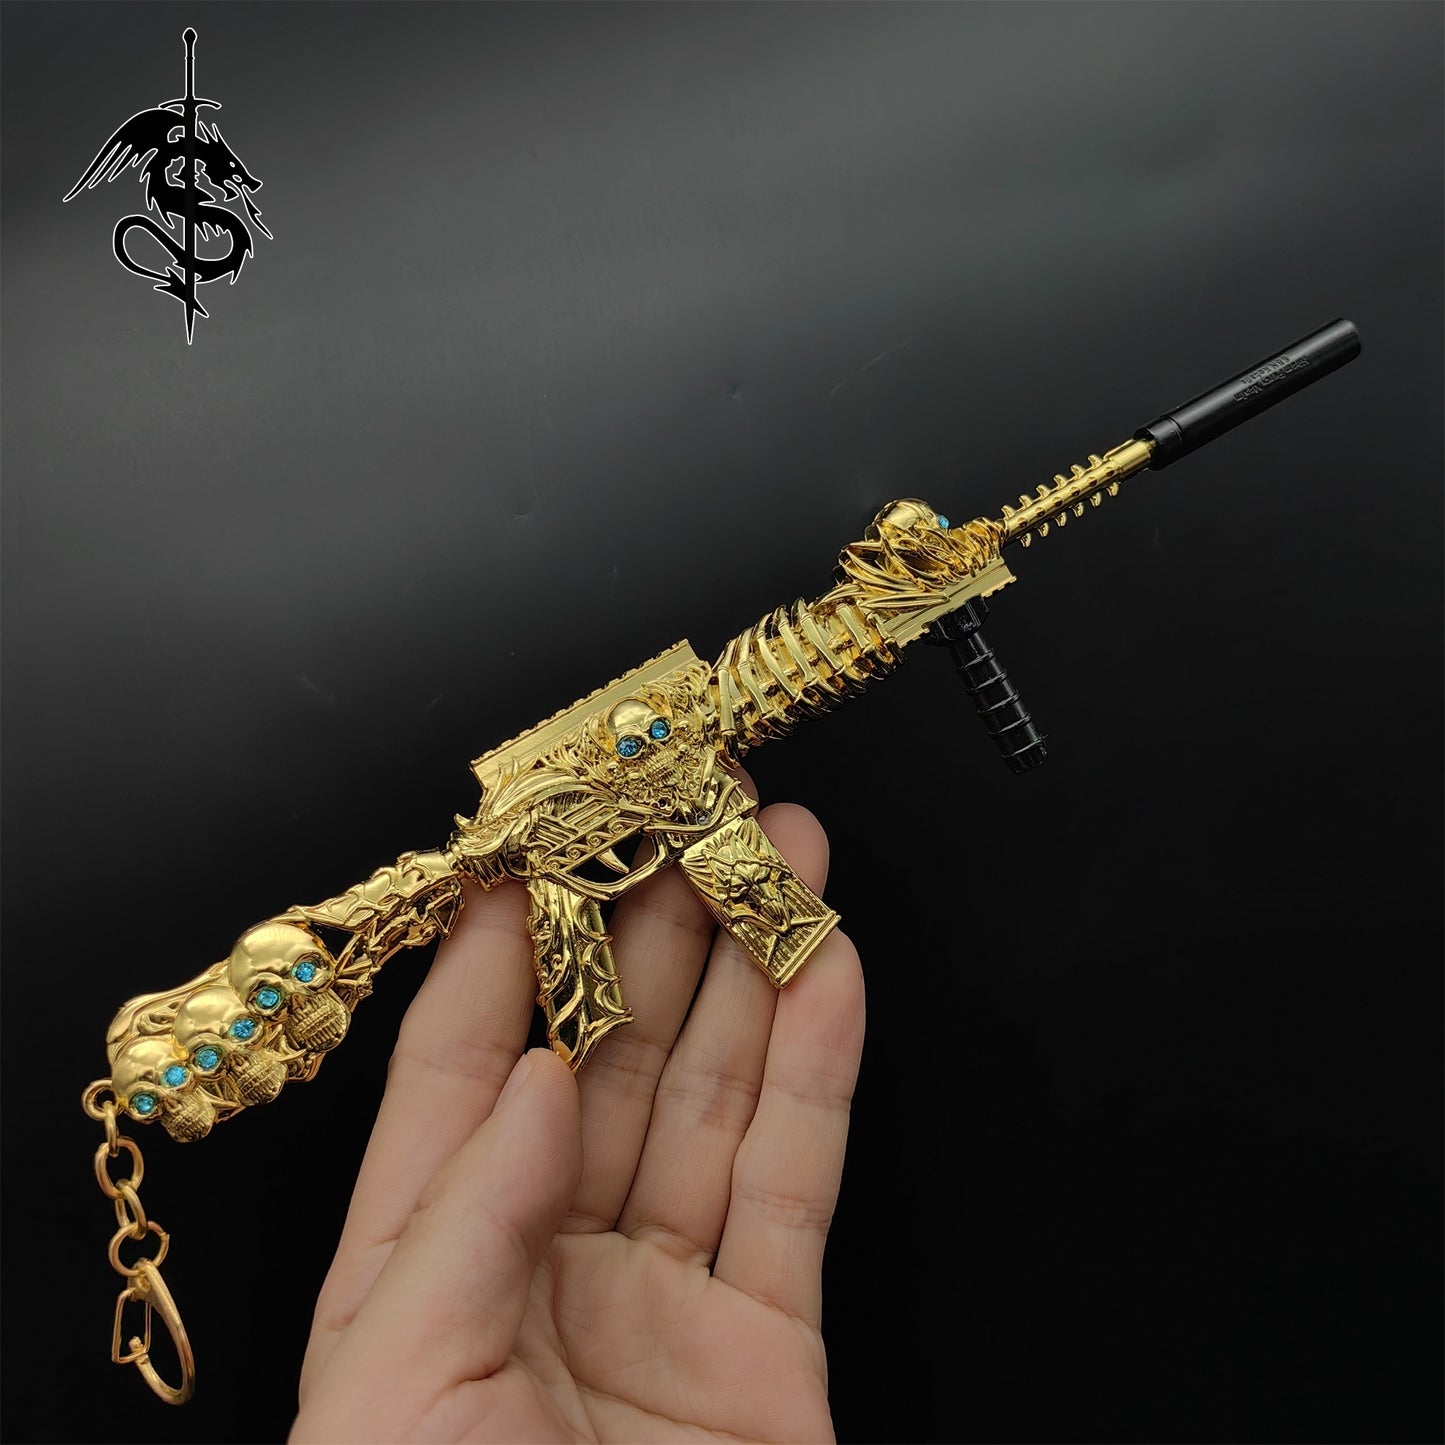 HK416 Golden Skull Miniature Gun Model